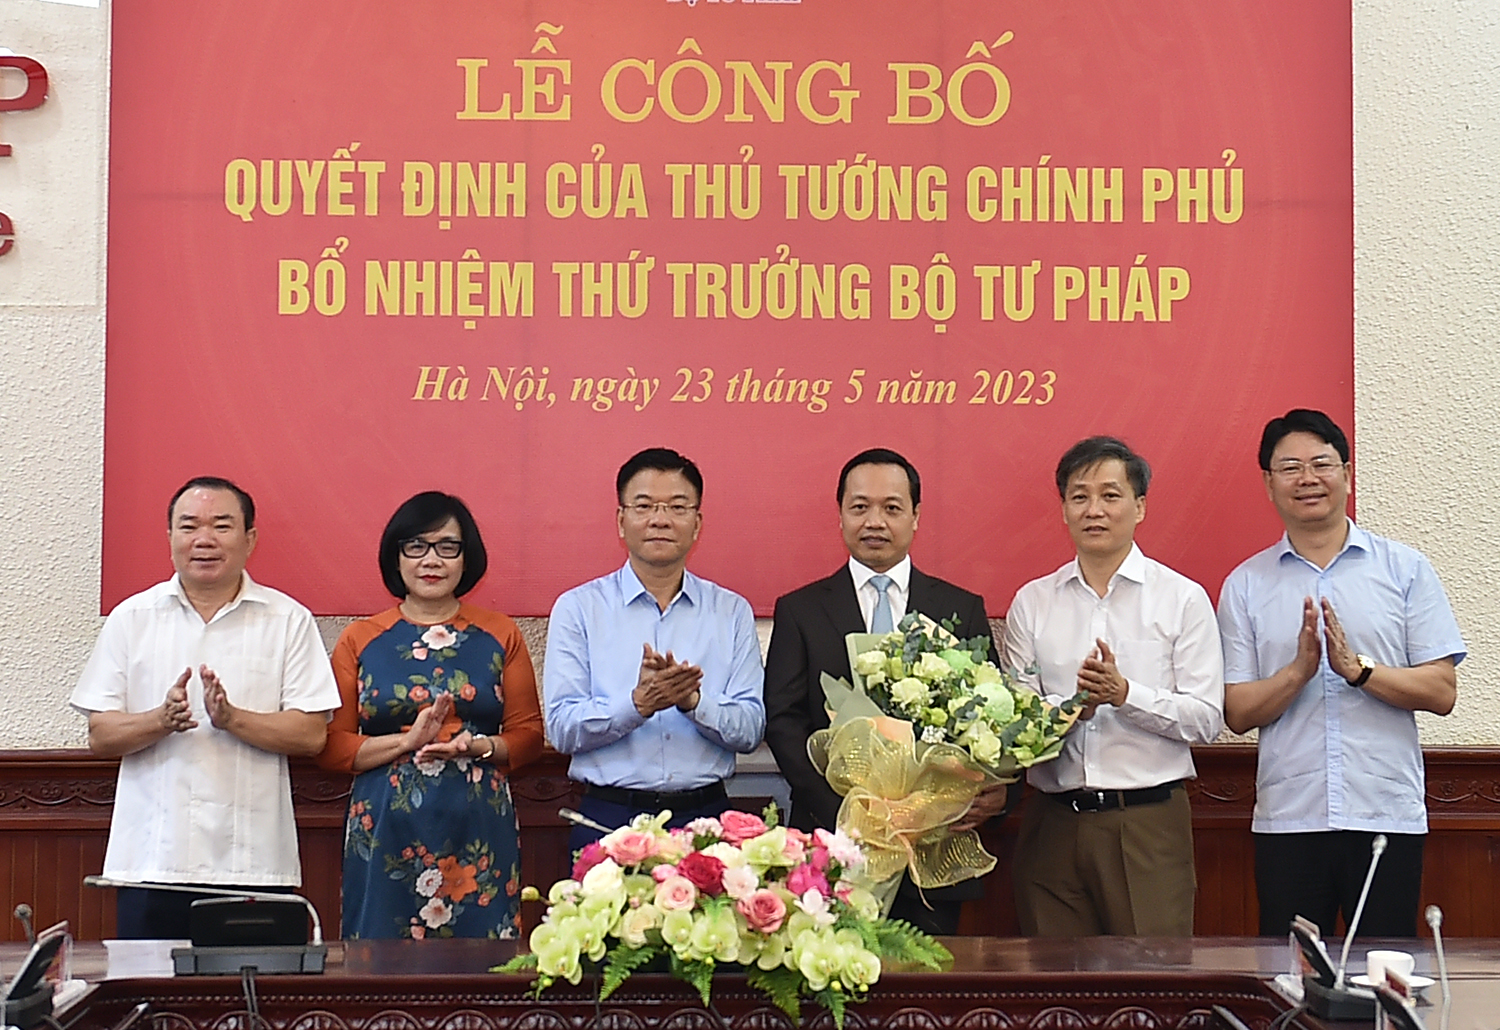 Tập thể lãnh đạo Bộ Tư pháp tặng hoa chúc mừng đồng chí Trần Tiến Dũng giữ chức Thứ trưởng Bộ Tư pháp. Ảnh: VGP